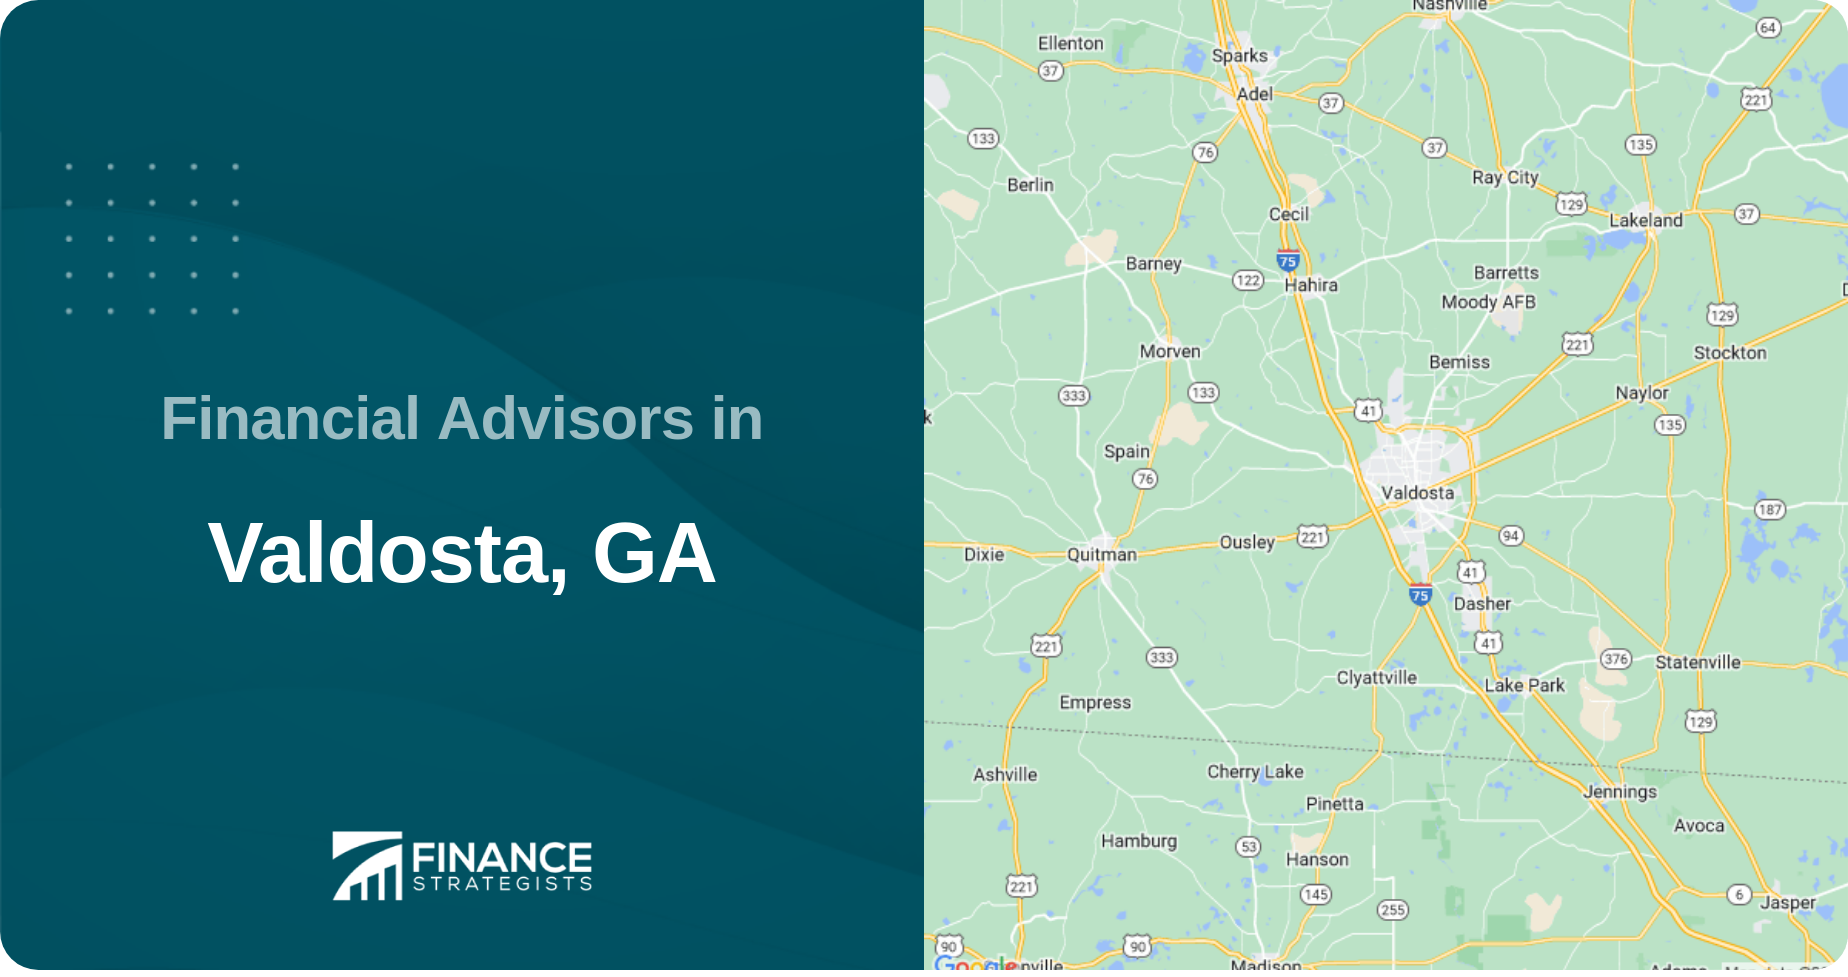 Financial Advisors in Valdosta, GA